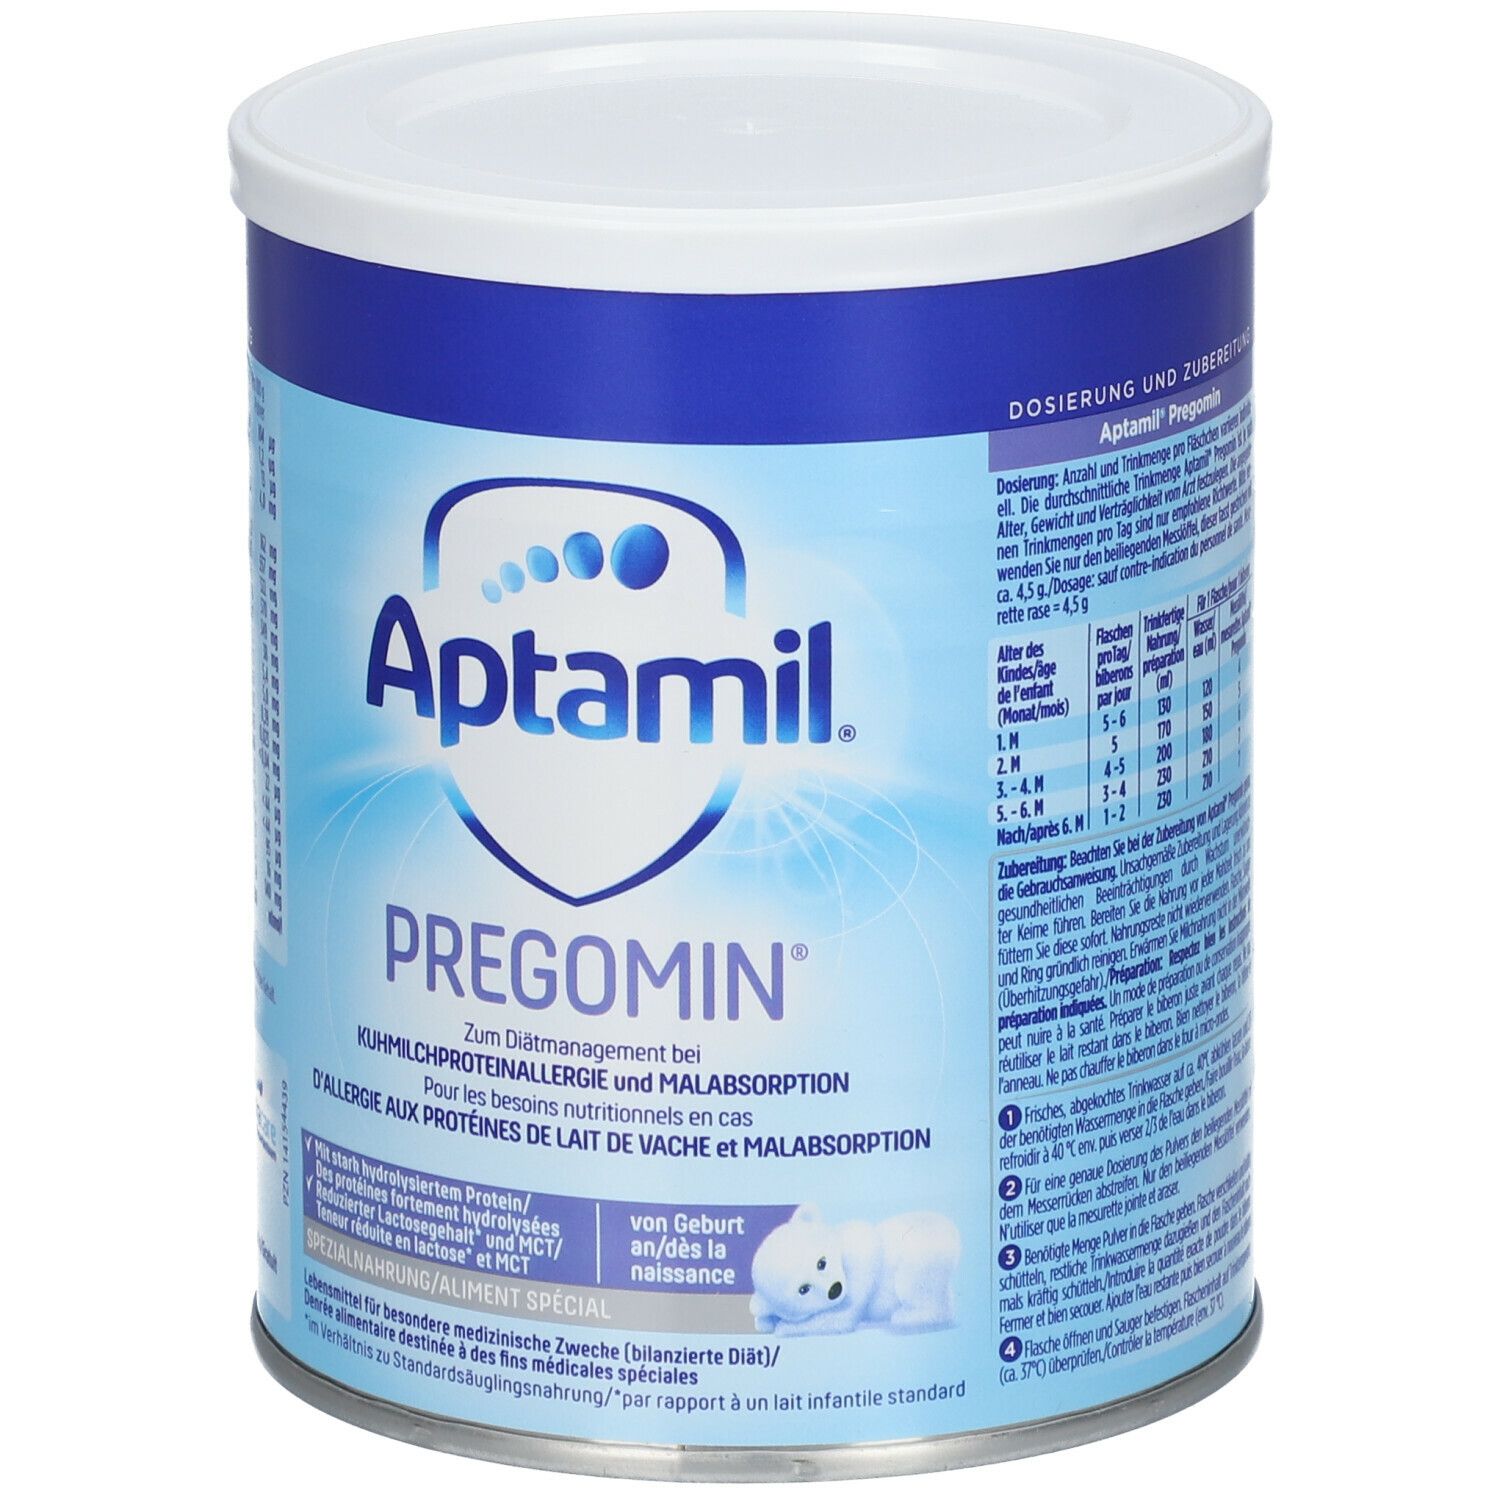 Aptamil® Pregomin extensiv hydrolisierte Spezialnahrung bei Kuhmilchproteinallergie